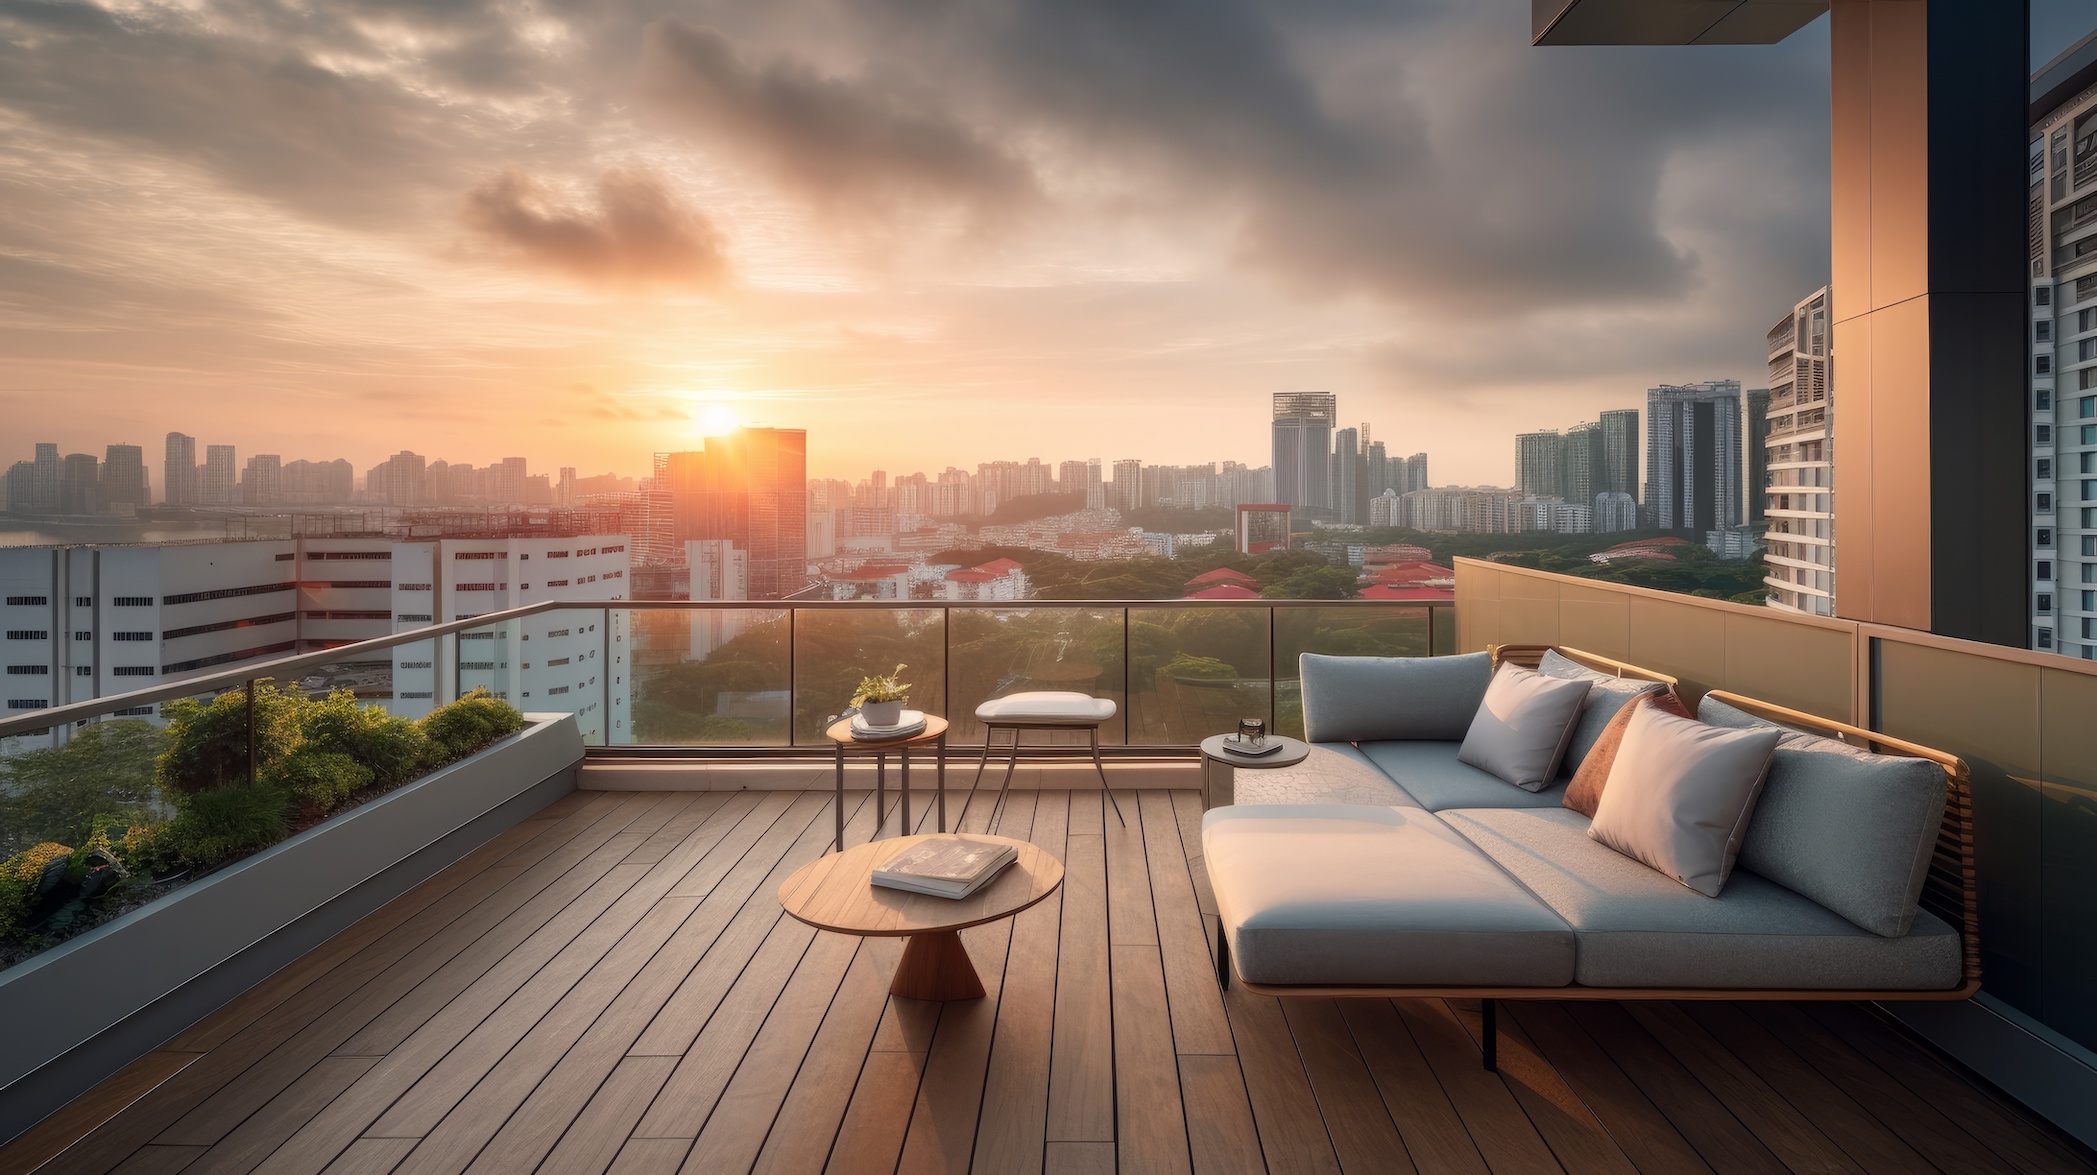 Rooftop wooden deck overlooking city